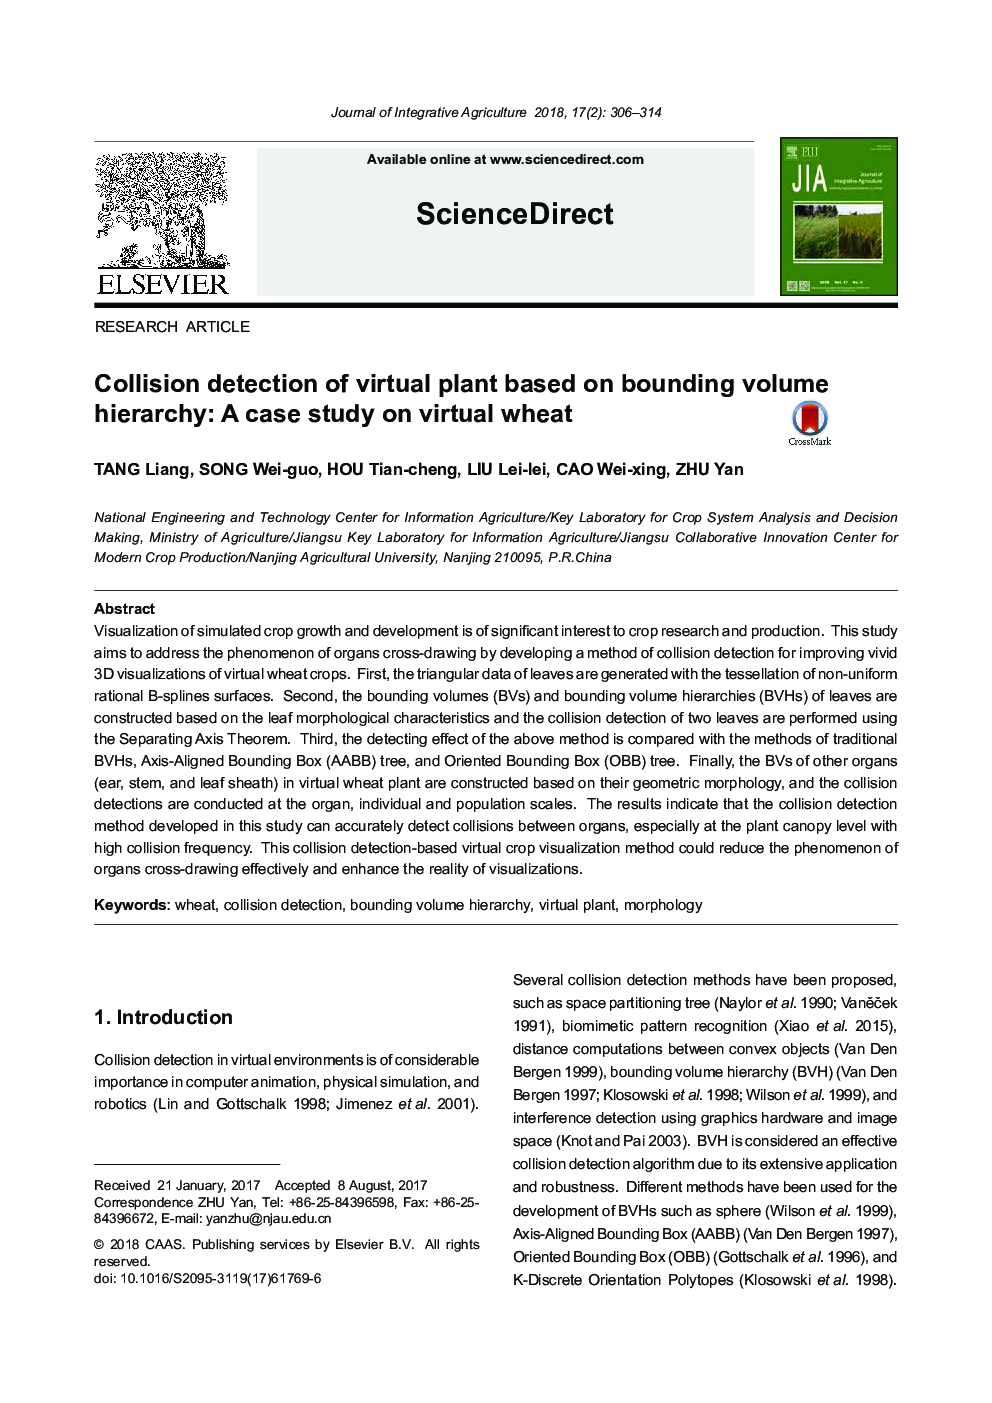 تشخیص برخورد گیاه مجازی بر اساس سلسله مراتب محدود: مطالعه موردی گندم 